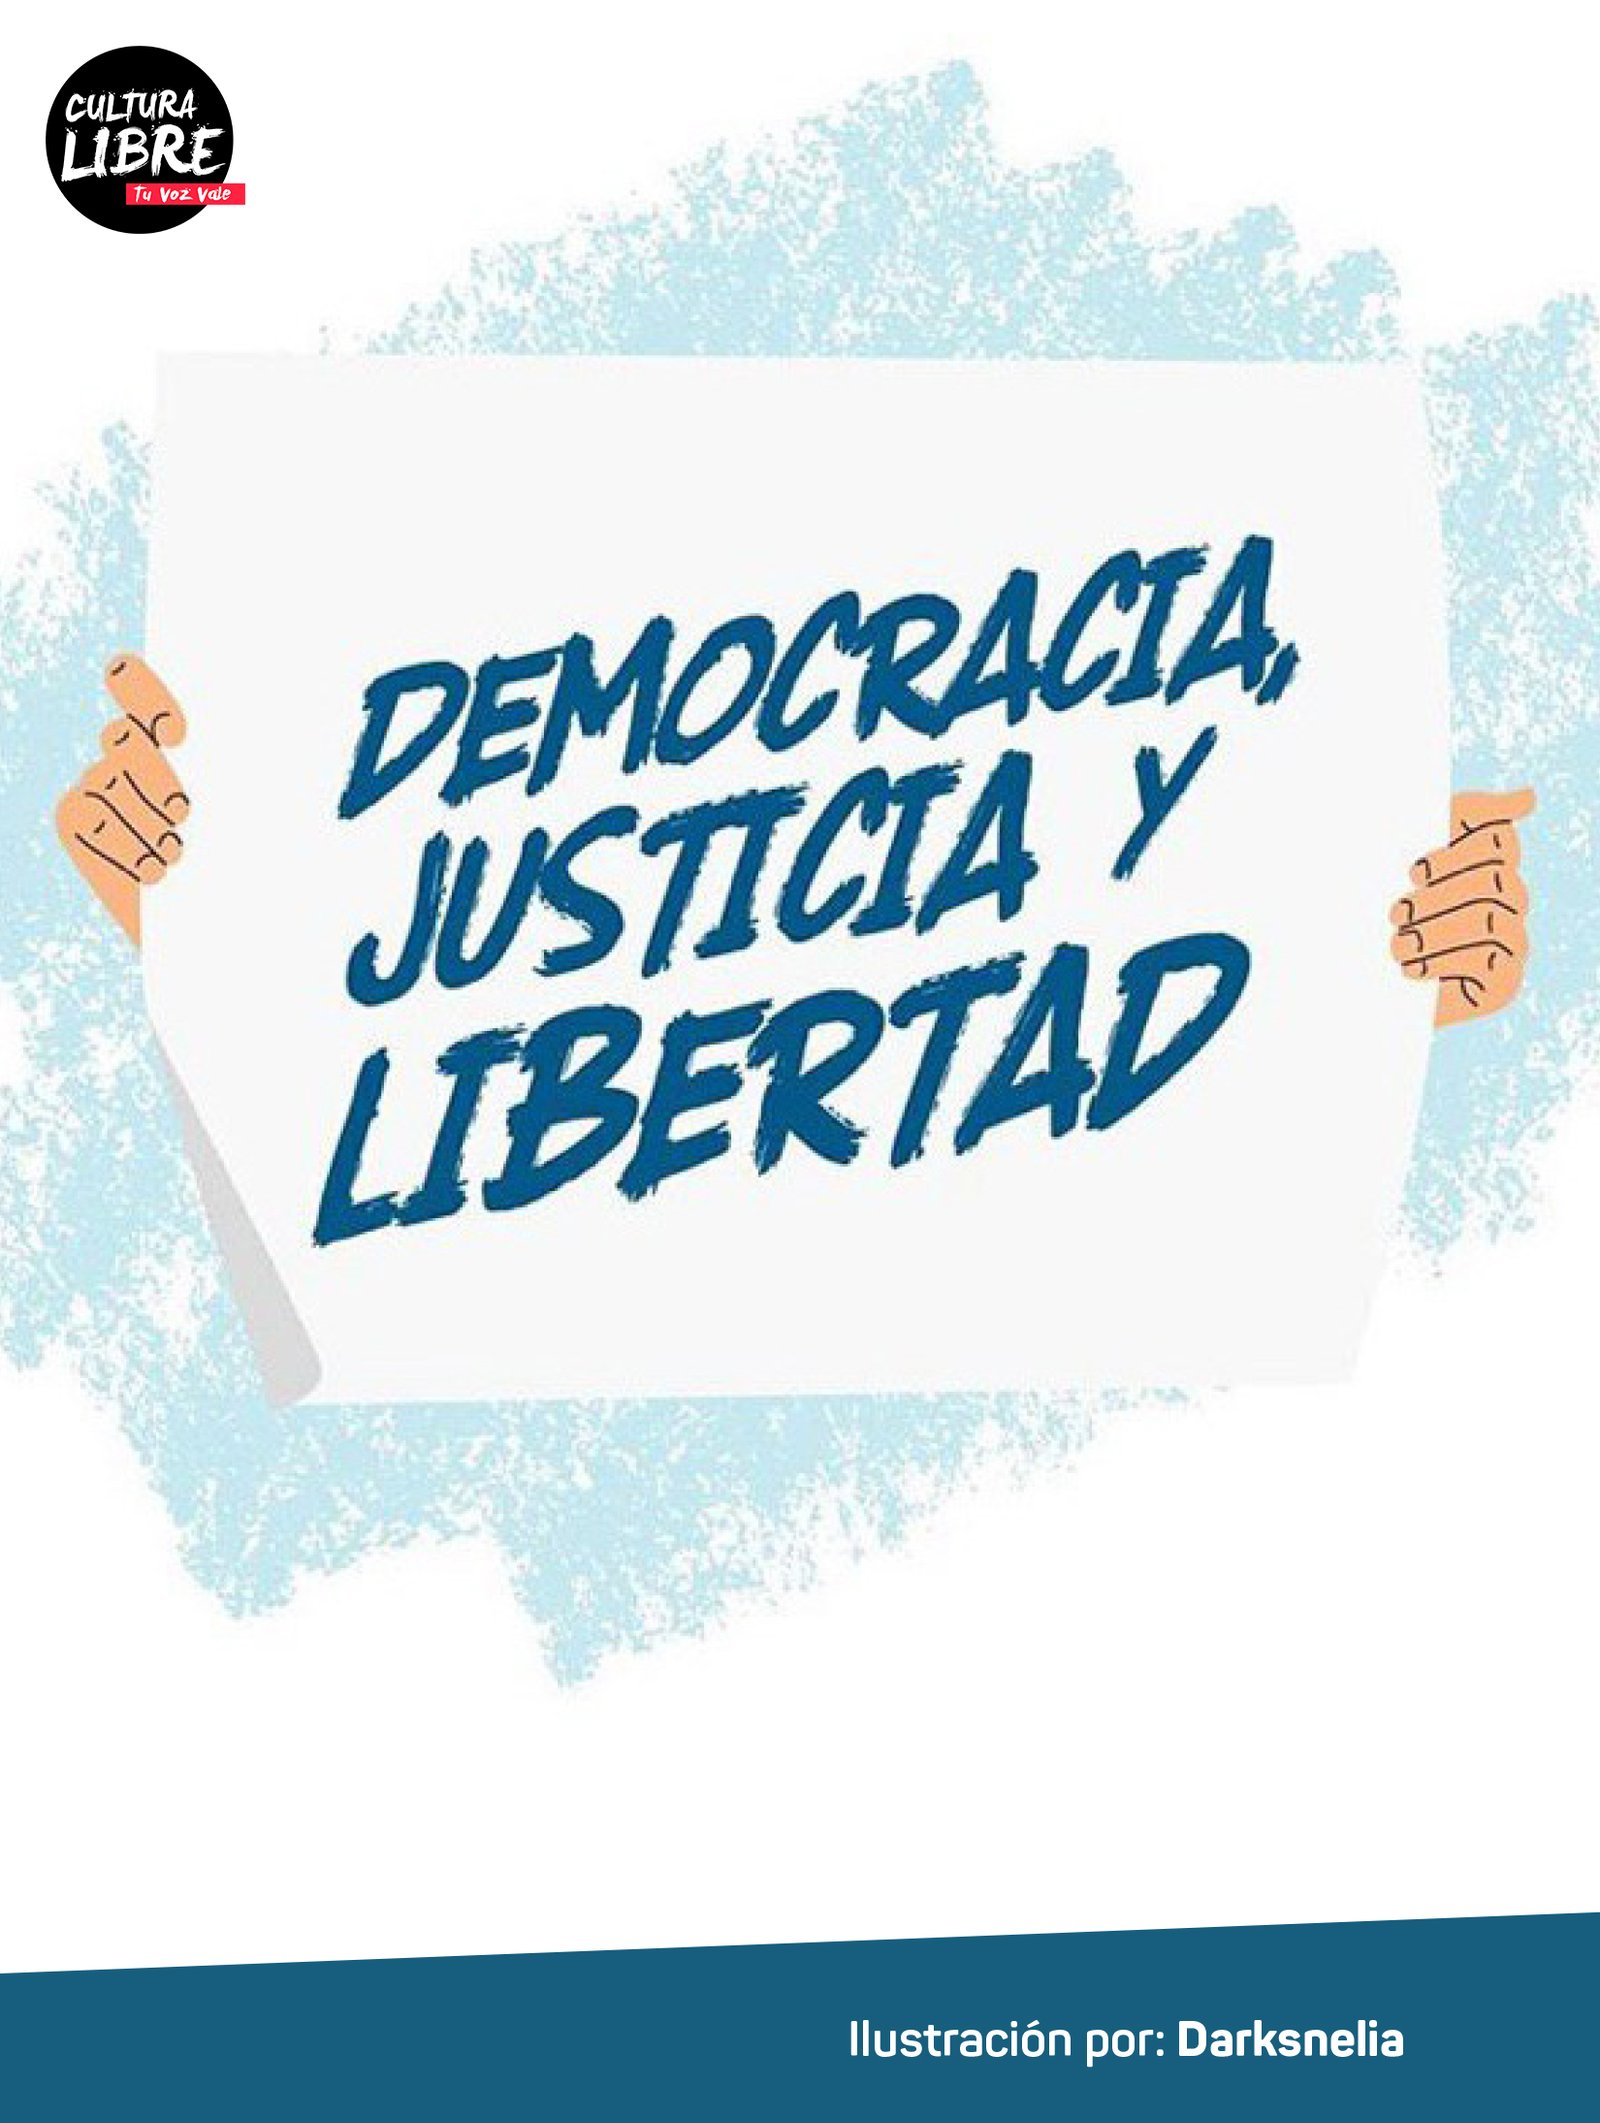 Â¡Democracia, justicia y libertad!